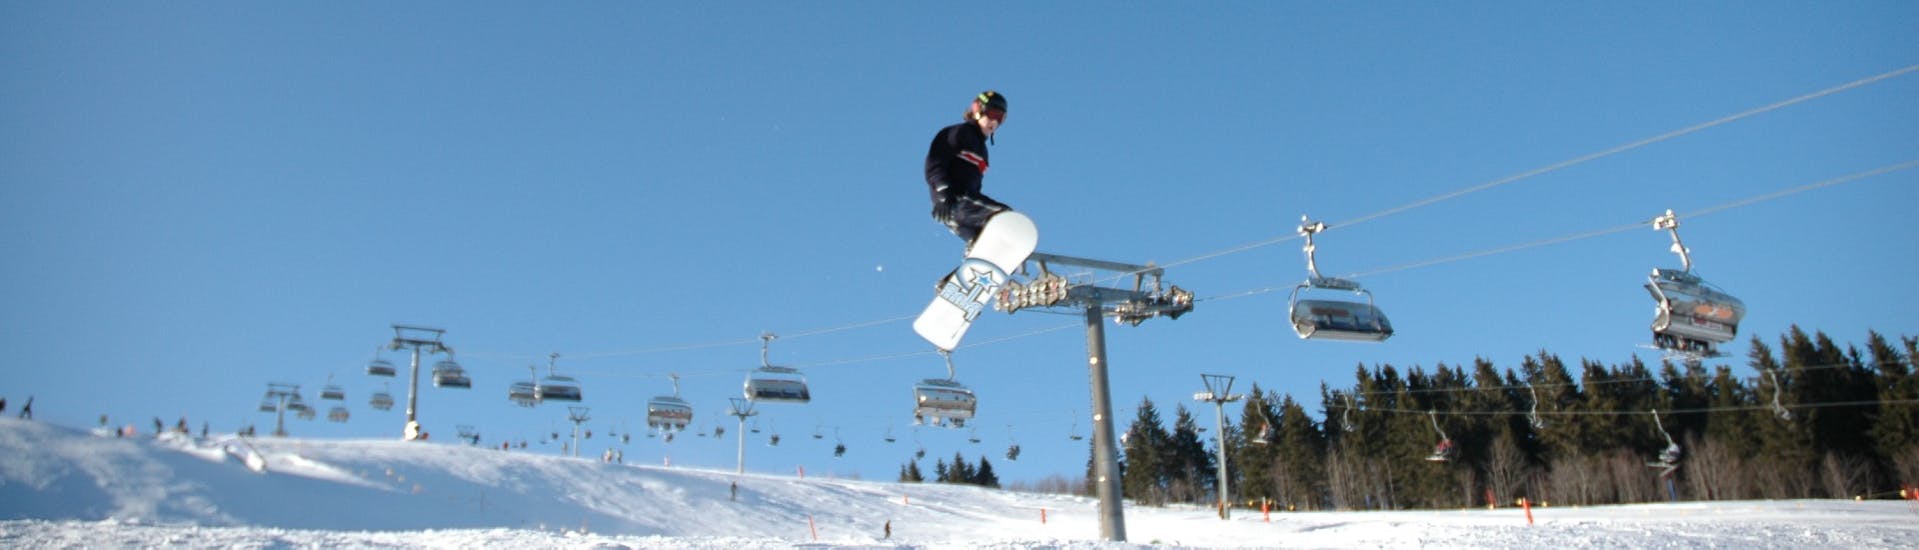 Privé snowboardlessen voor kinderen (vanaf 7 jaar) en volwassenen van alle niveaus.